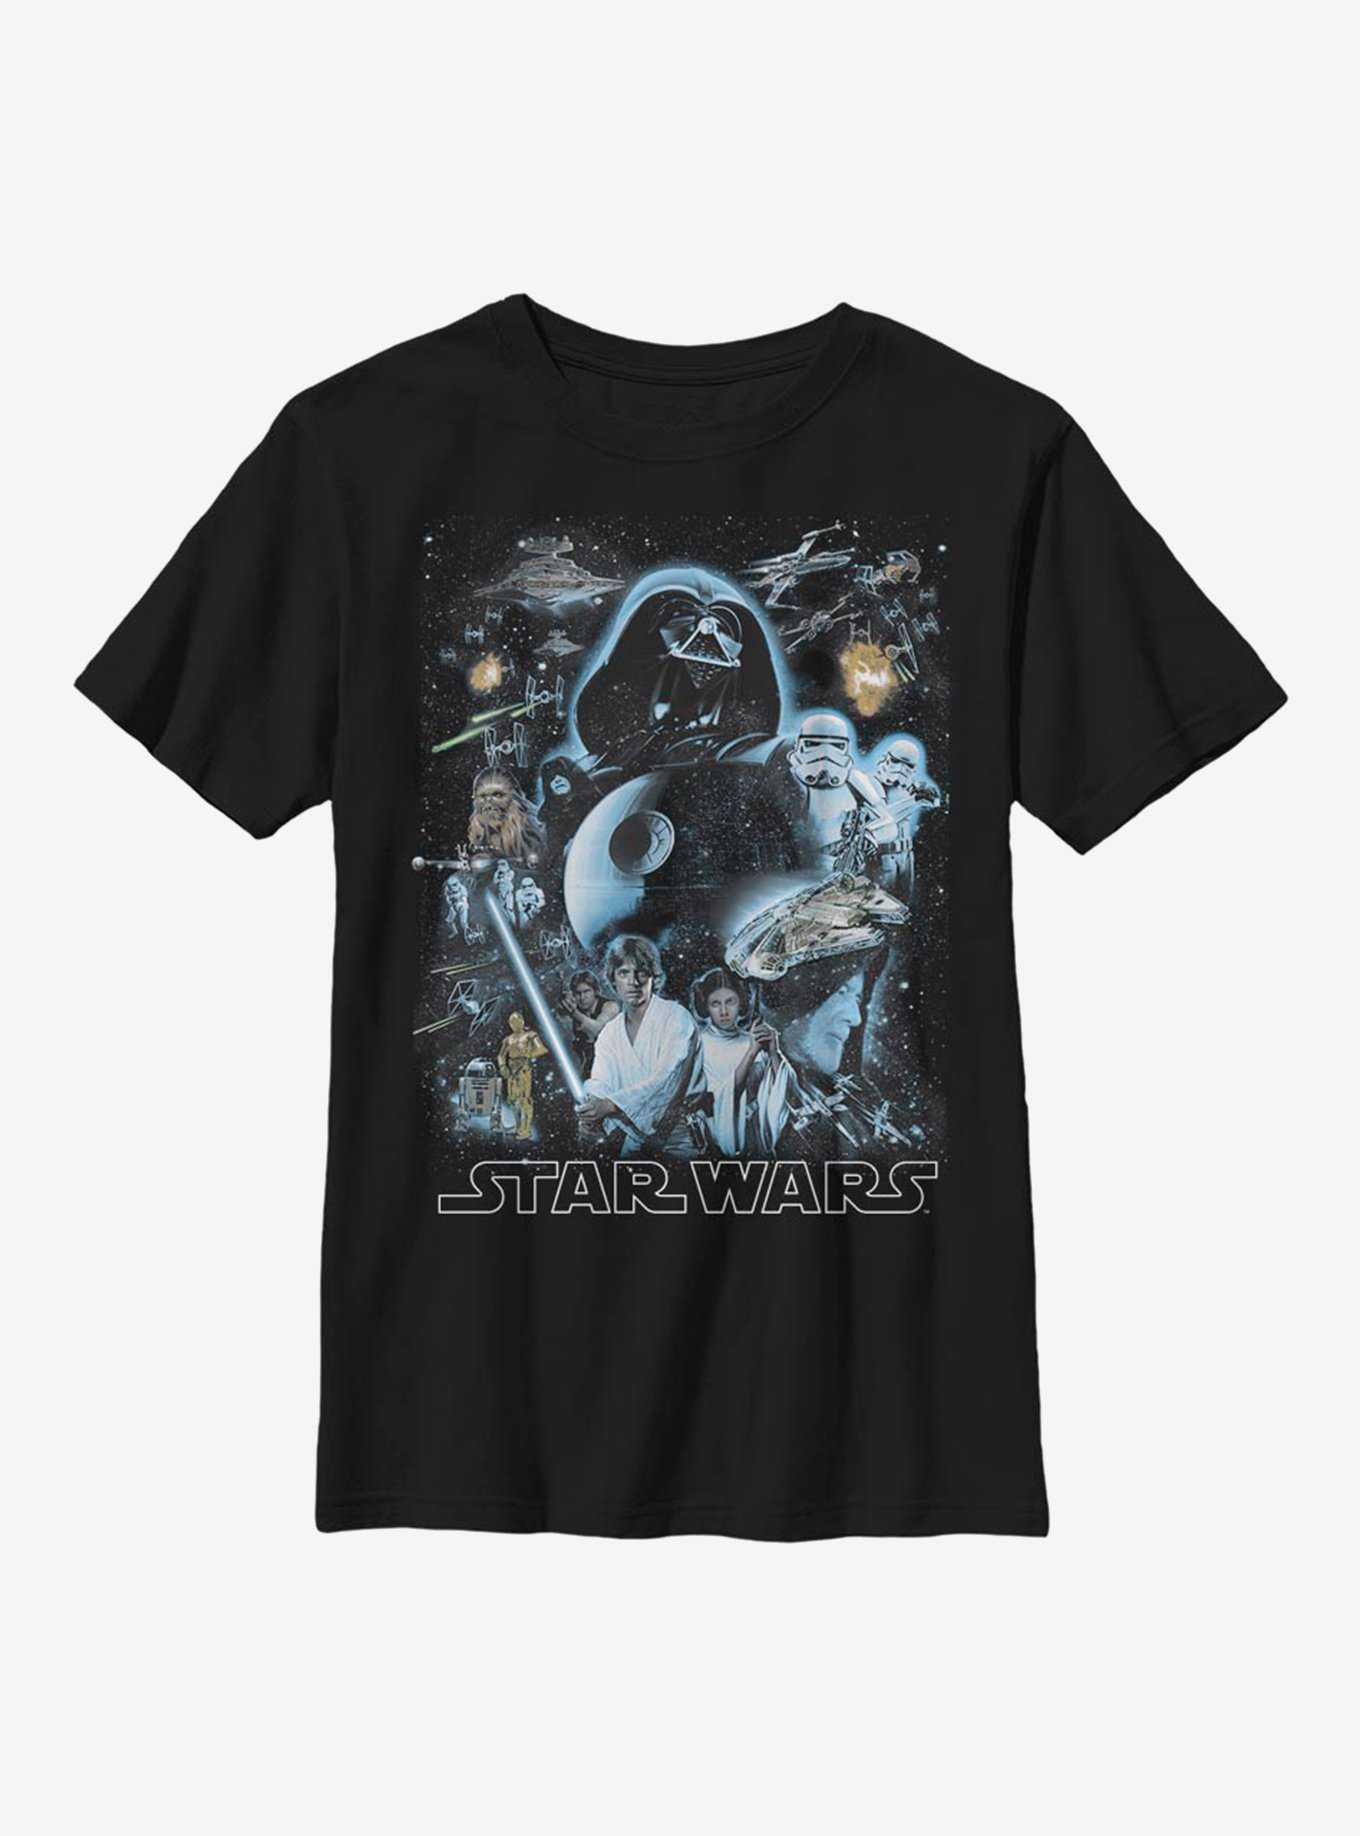 Star Wars Galaxy of Stars Youth T-Shirt, , hi-res